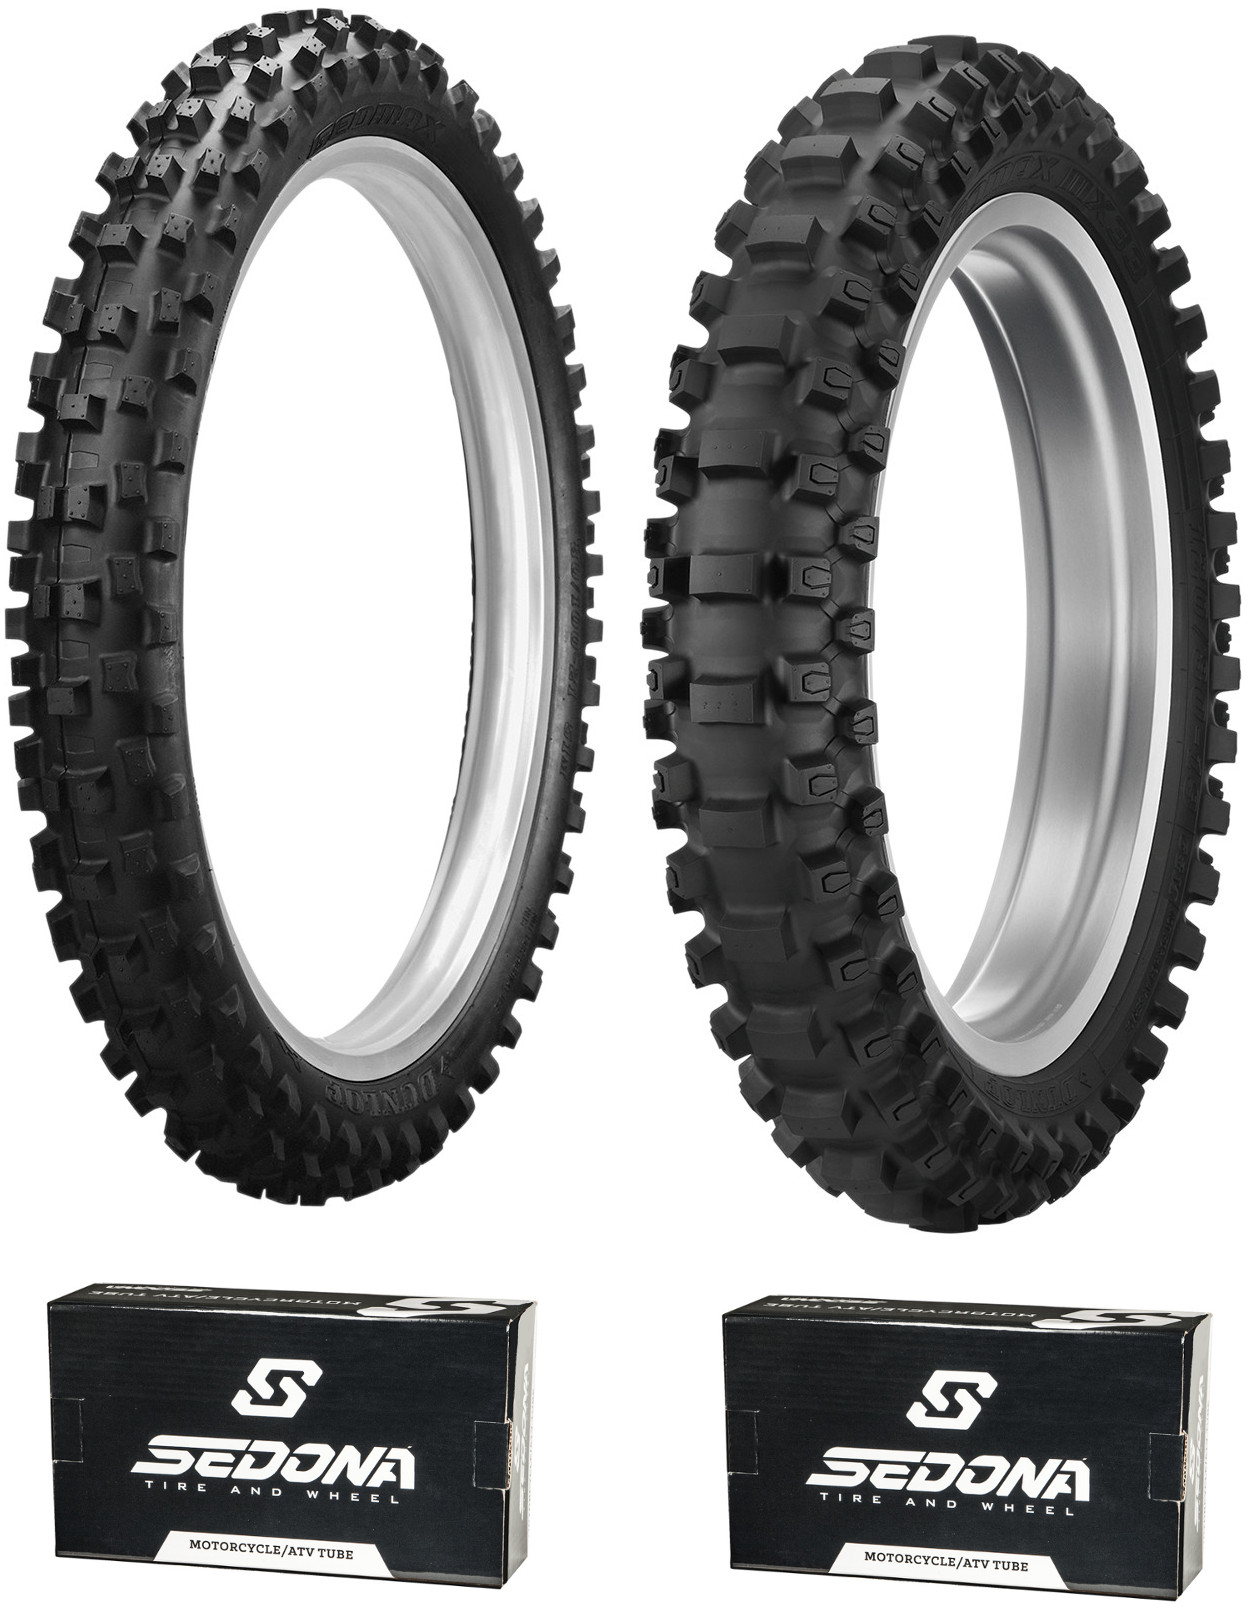 MX3S 80/100-21 & MX33 100/90-19 Tire Kit - w/ Sedona Tubes - Click Image to Close